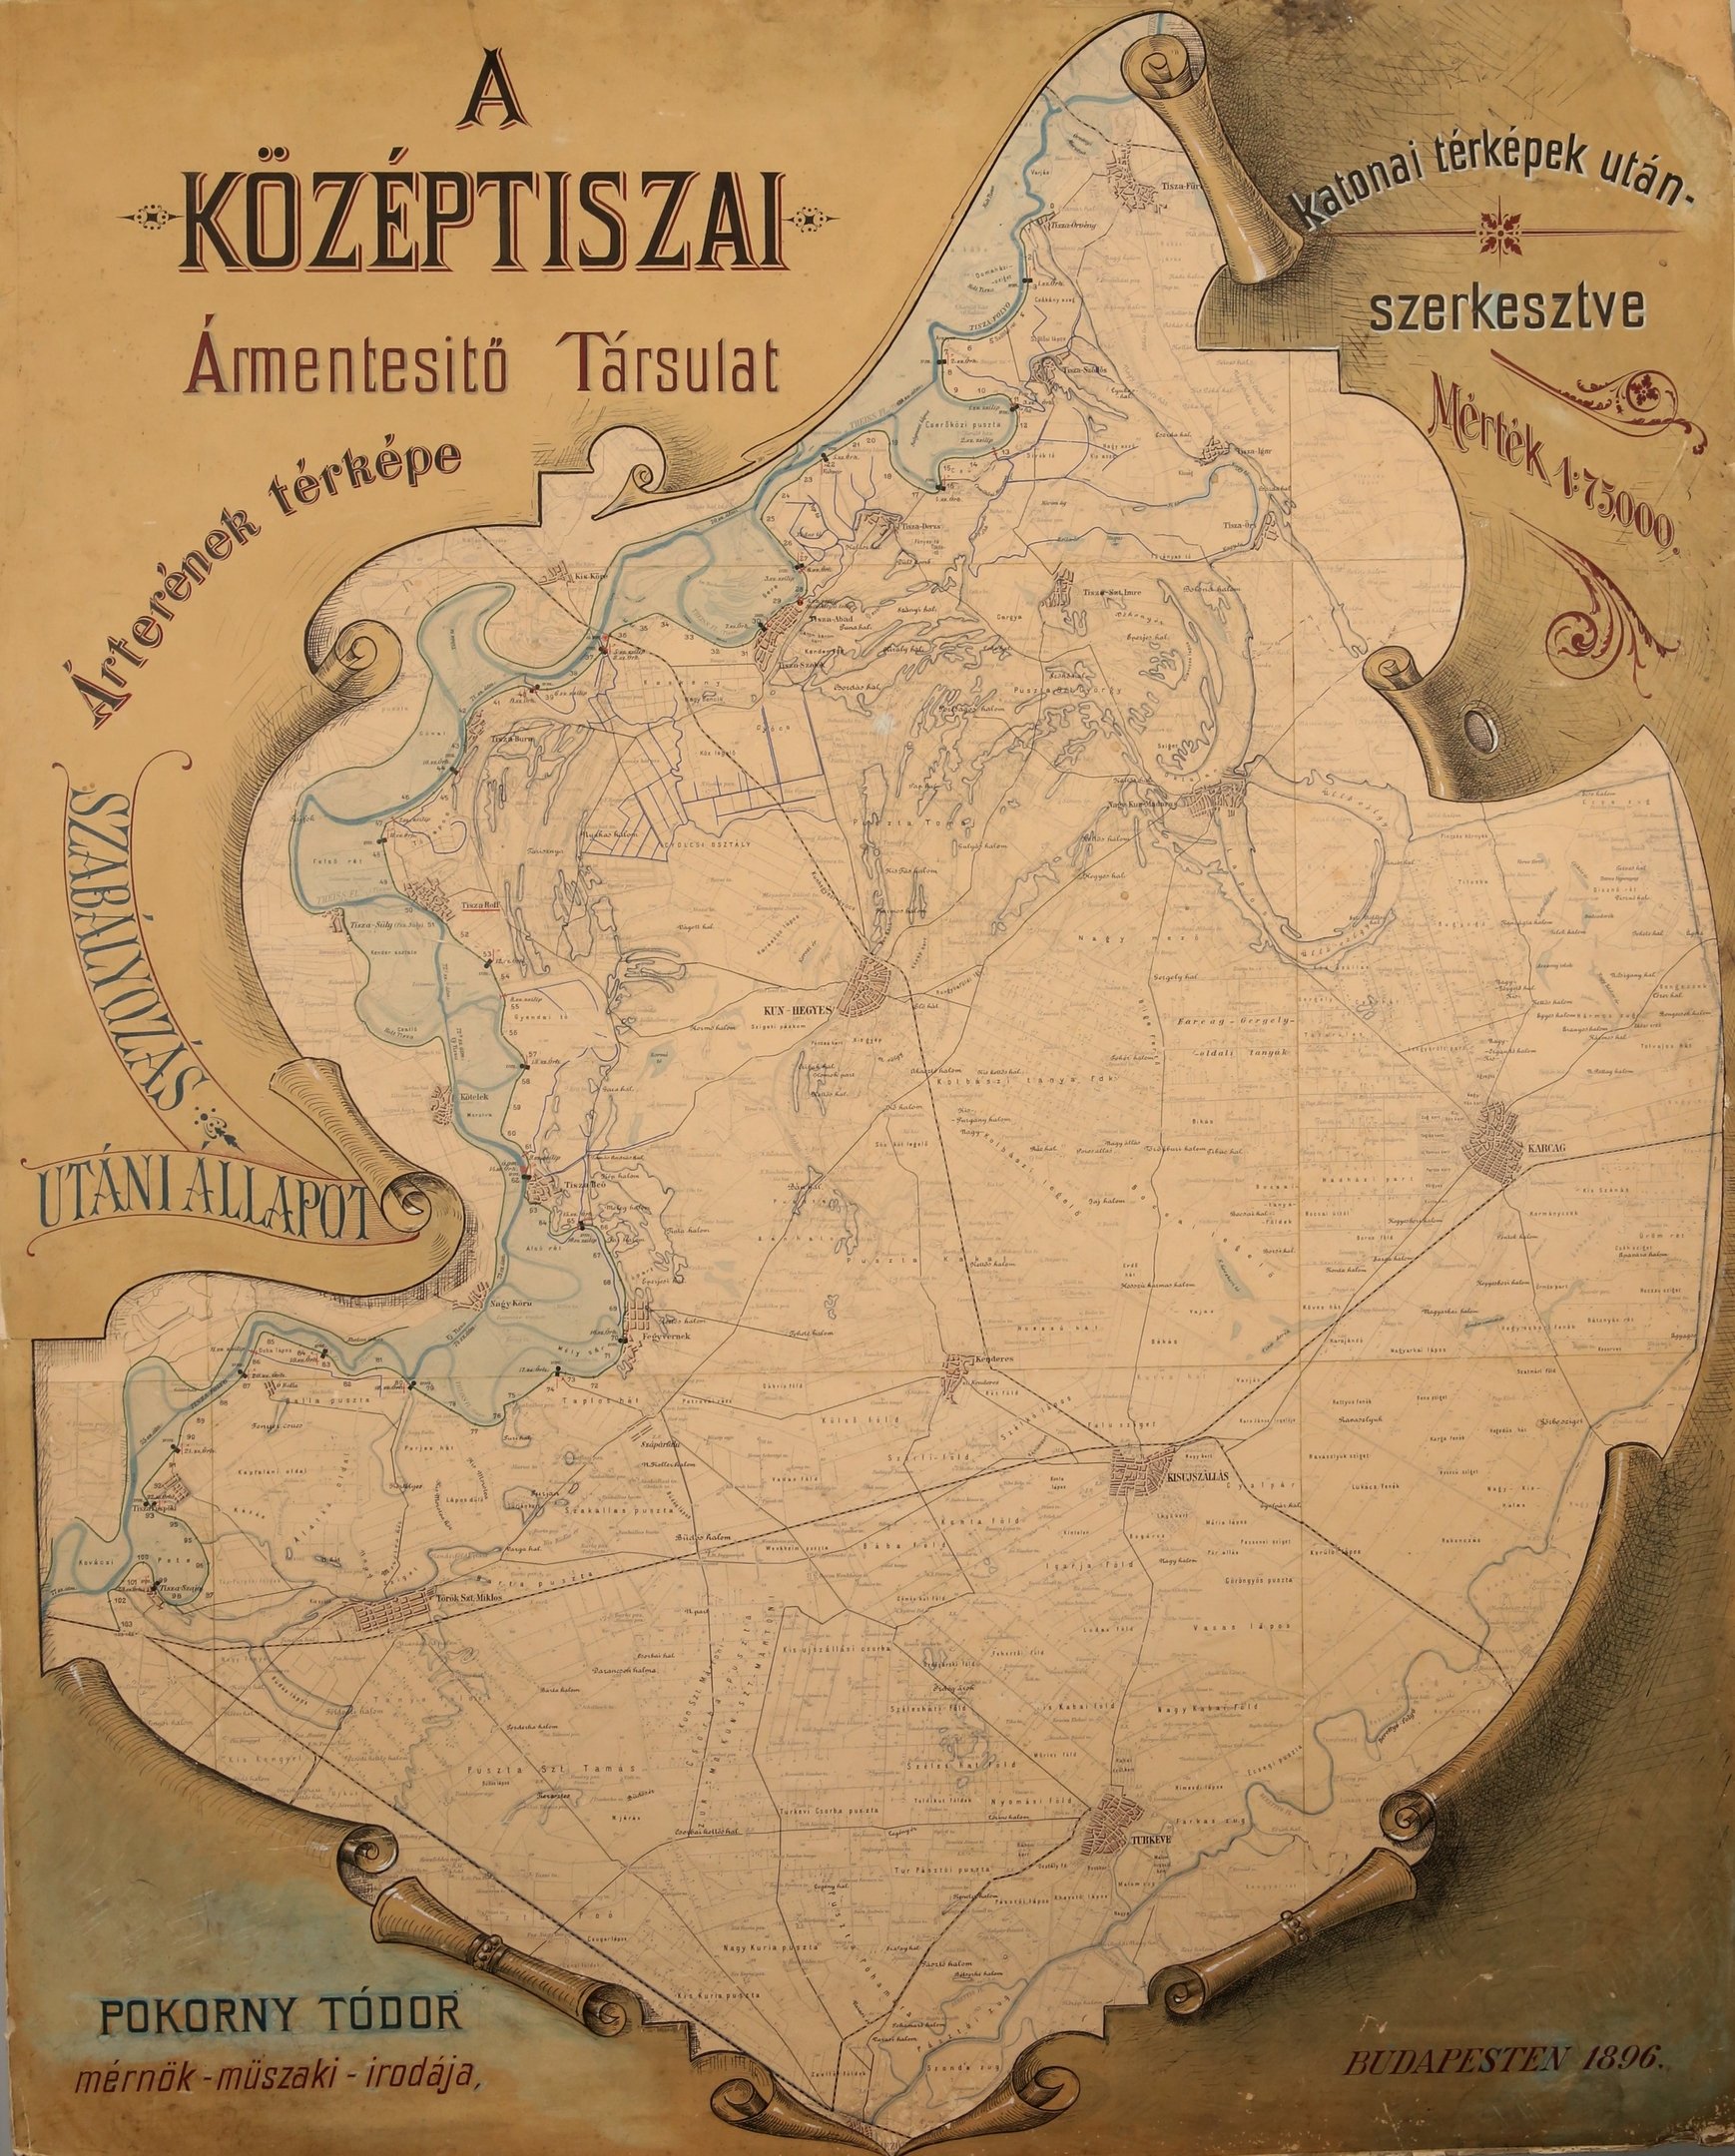 A Középtiszai Ármentesítő Társulat árterének térképe (Magyar Környezetvédelmi és Vízügyi Múzeum - Duna Múzeum CC BY-NC-SA)